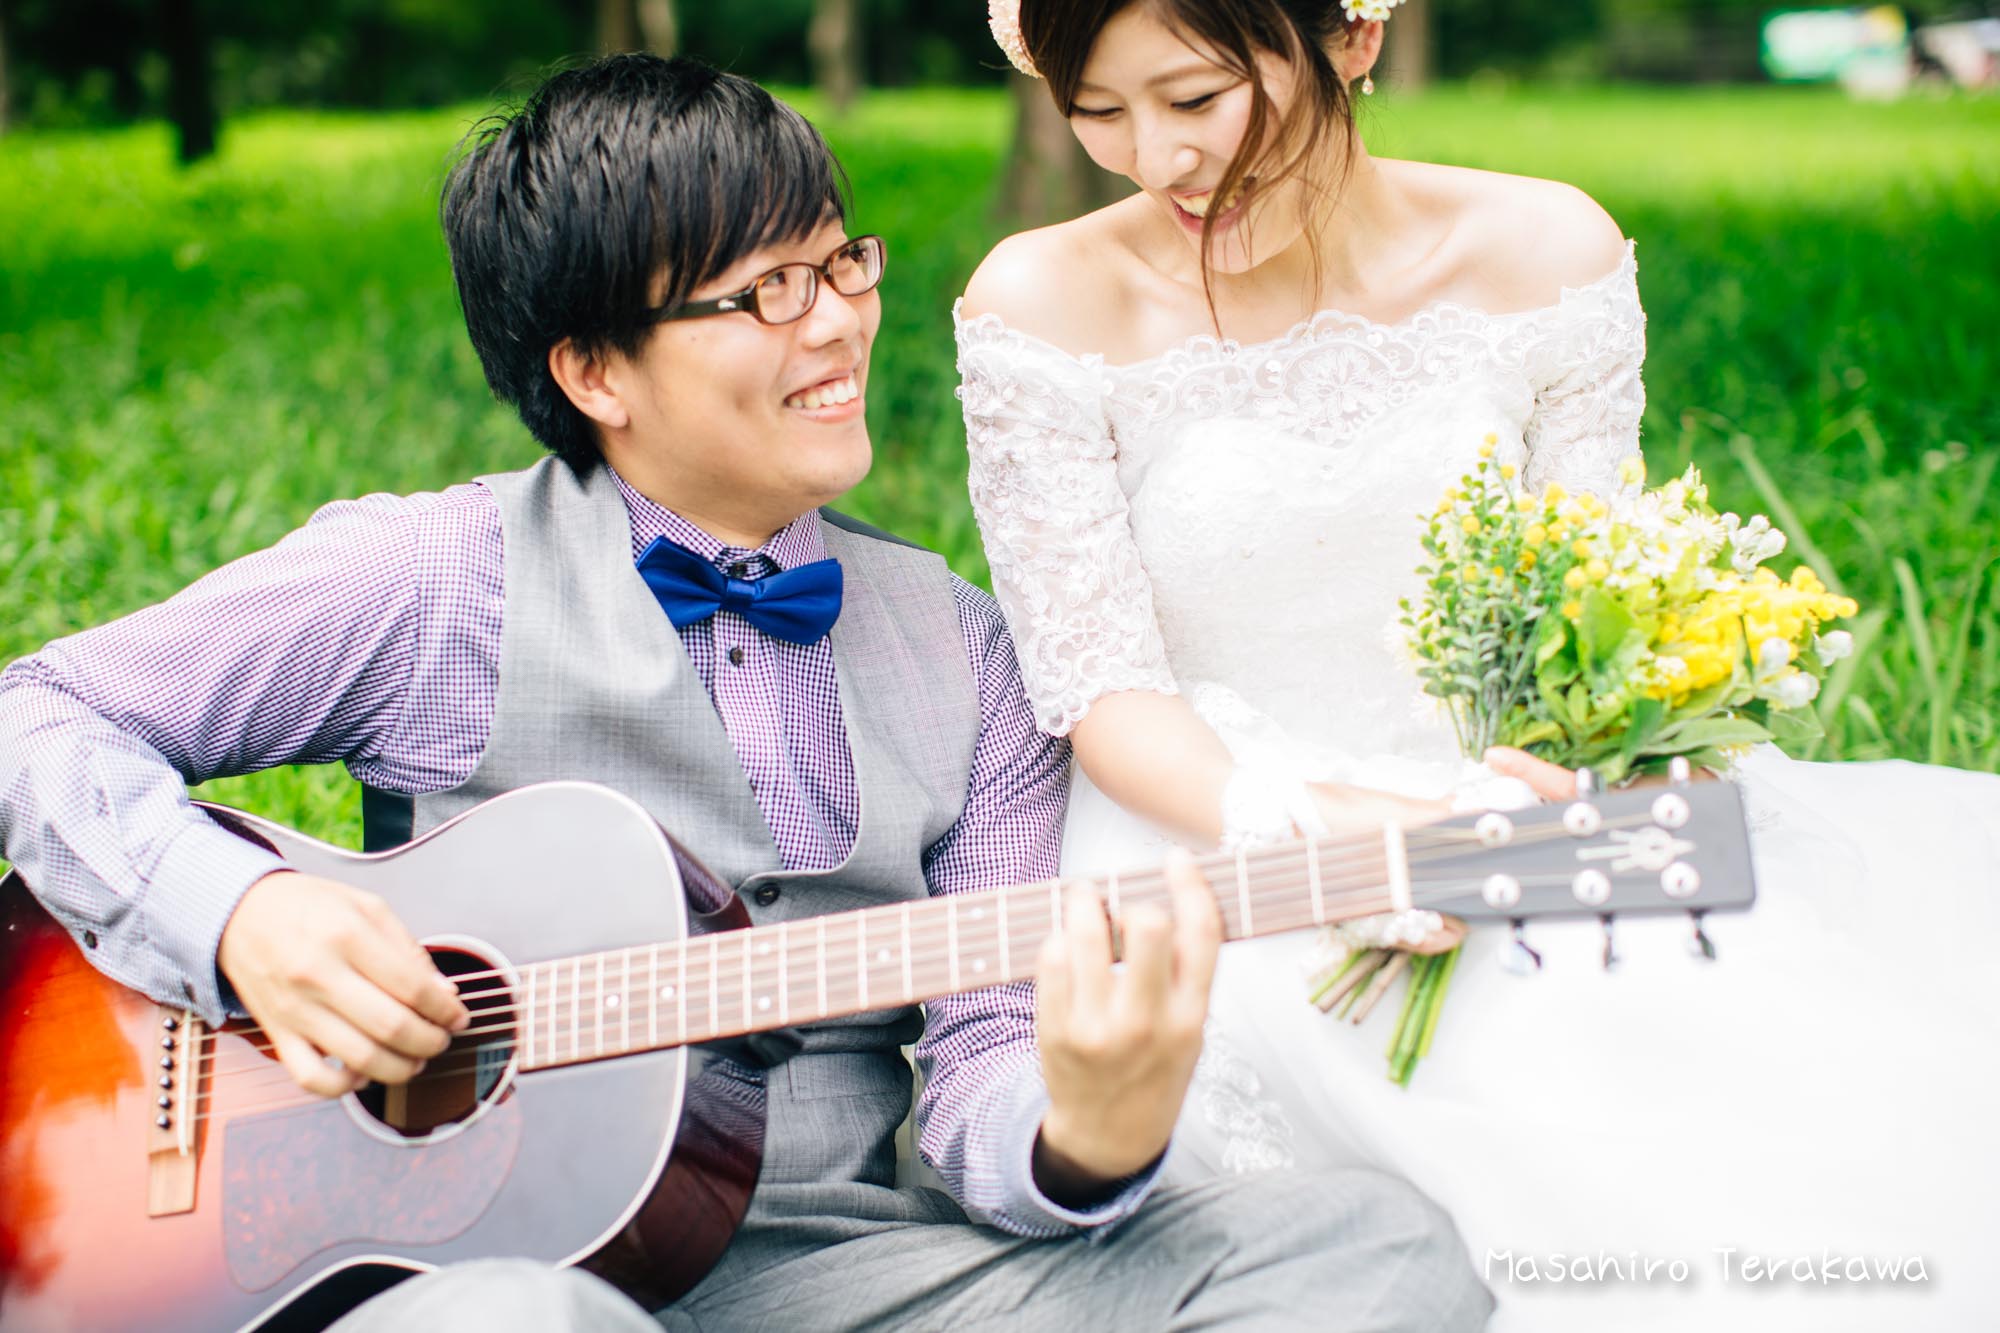 夏の結婚写真 前撮り 大阪 ウェディングカメラマン 寺川昌宏 結婚式の写真撮影 前撮り